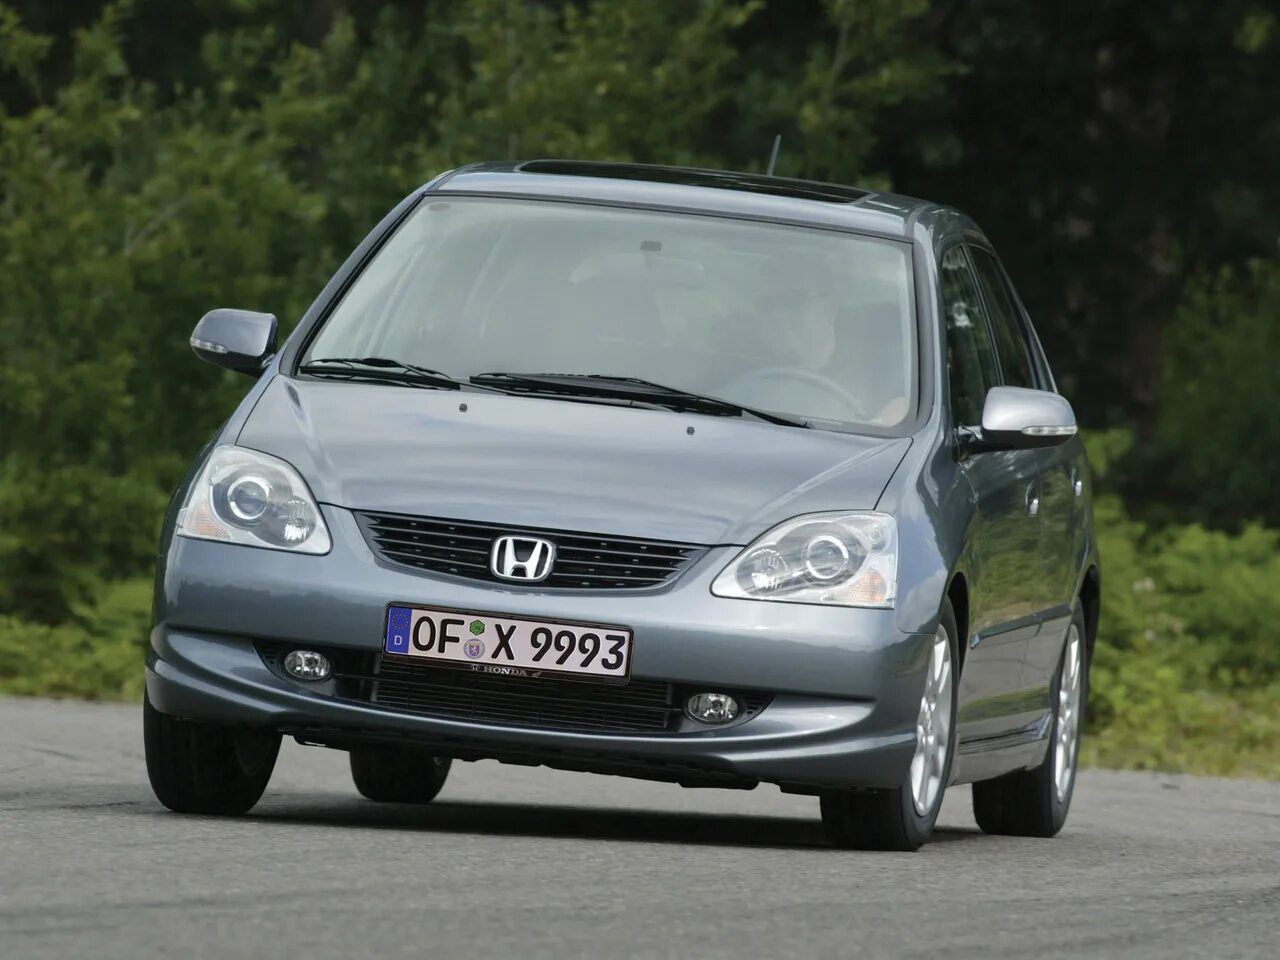 Honda Civic 7. Цивик 7 хэтчбек. Honda Civic 7 поколение хэтчбек. Honda Civic 2004 1.7.